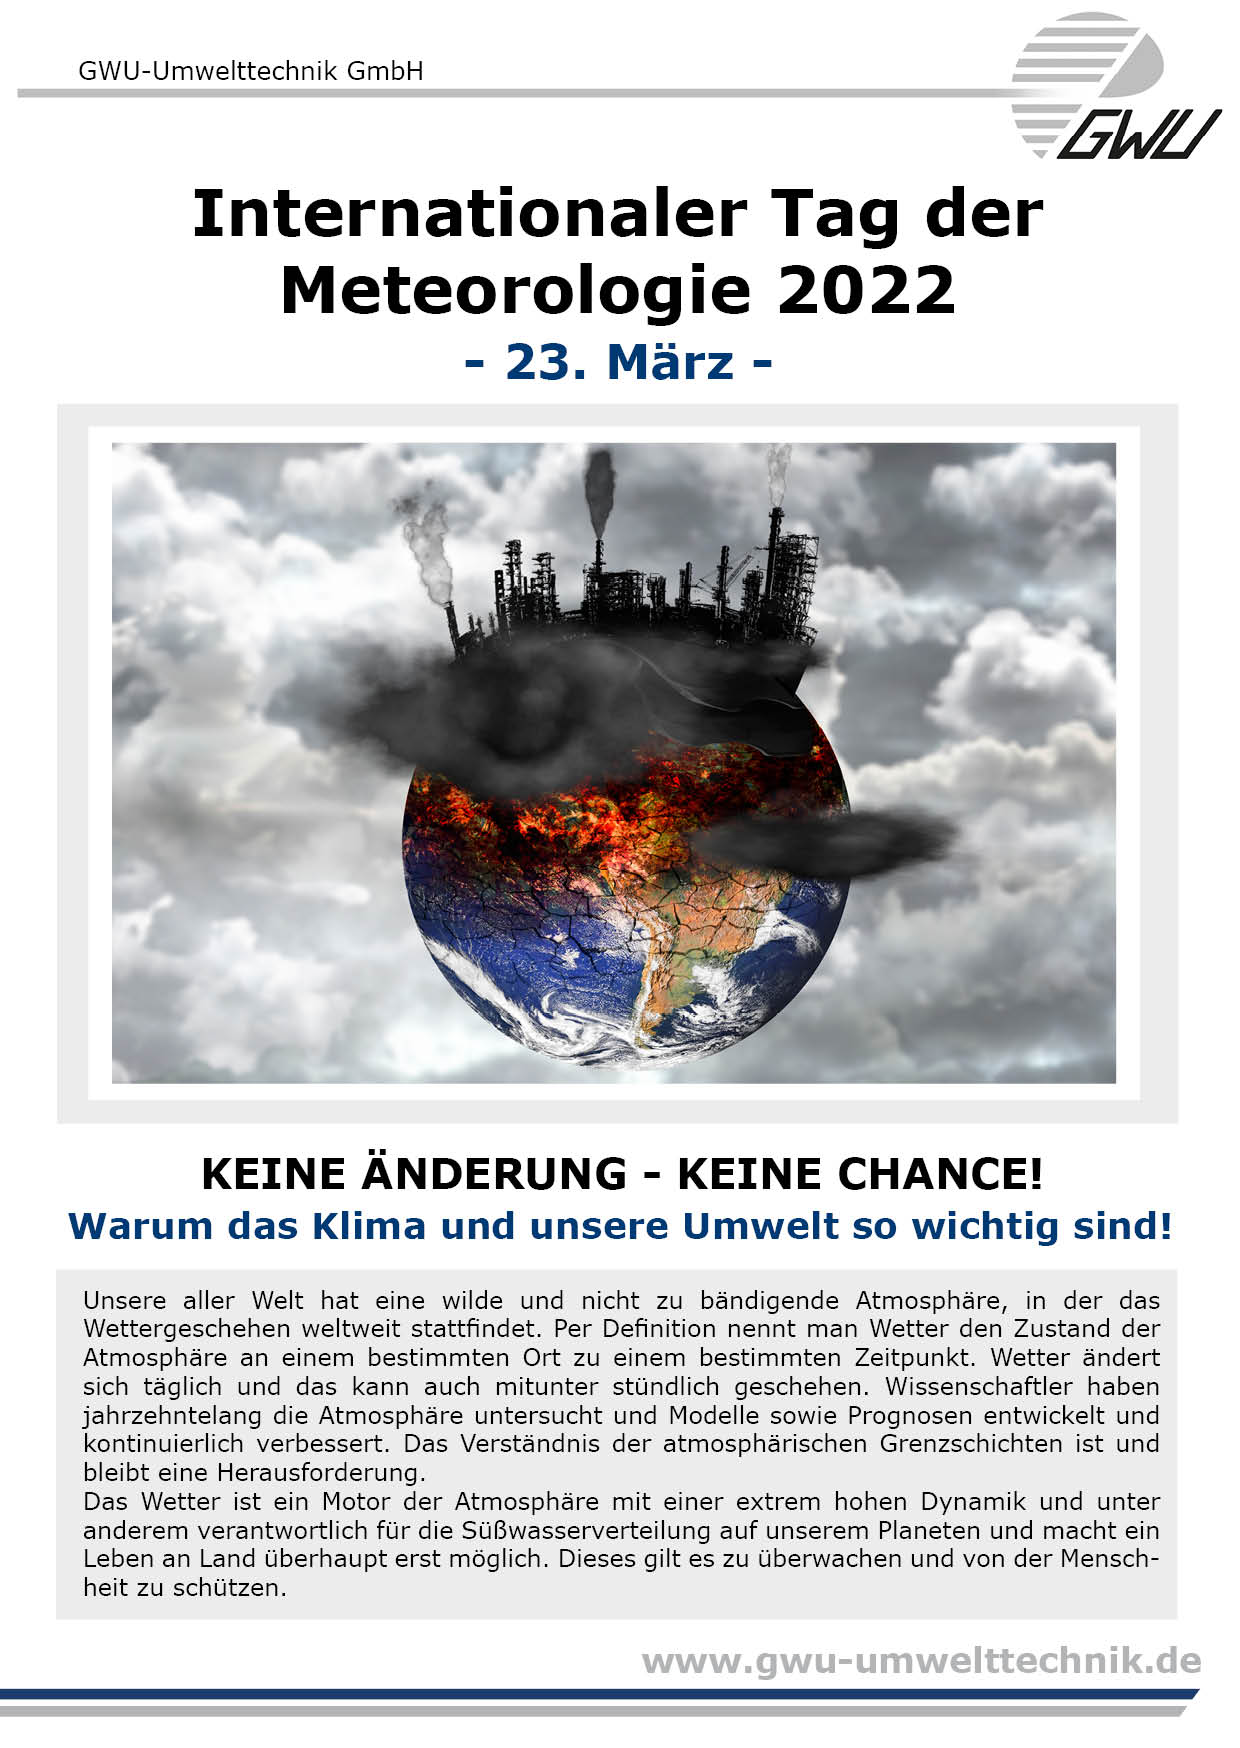 GWU informiert Tag der Meteorologie 2022 03